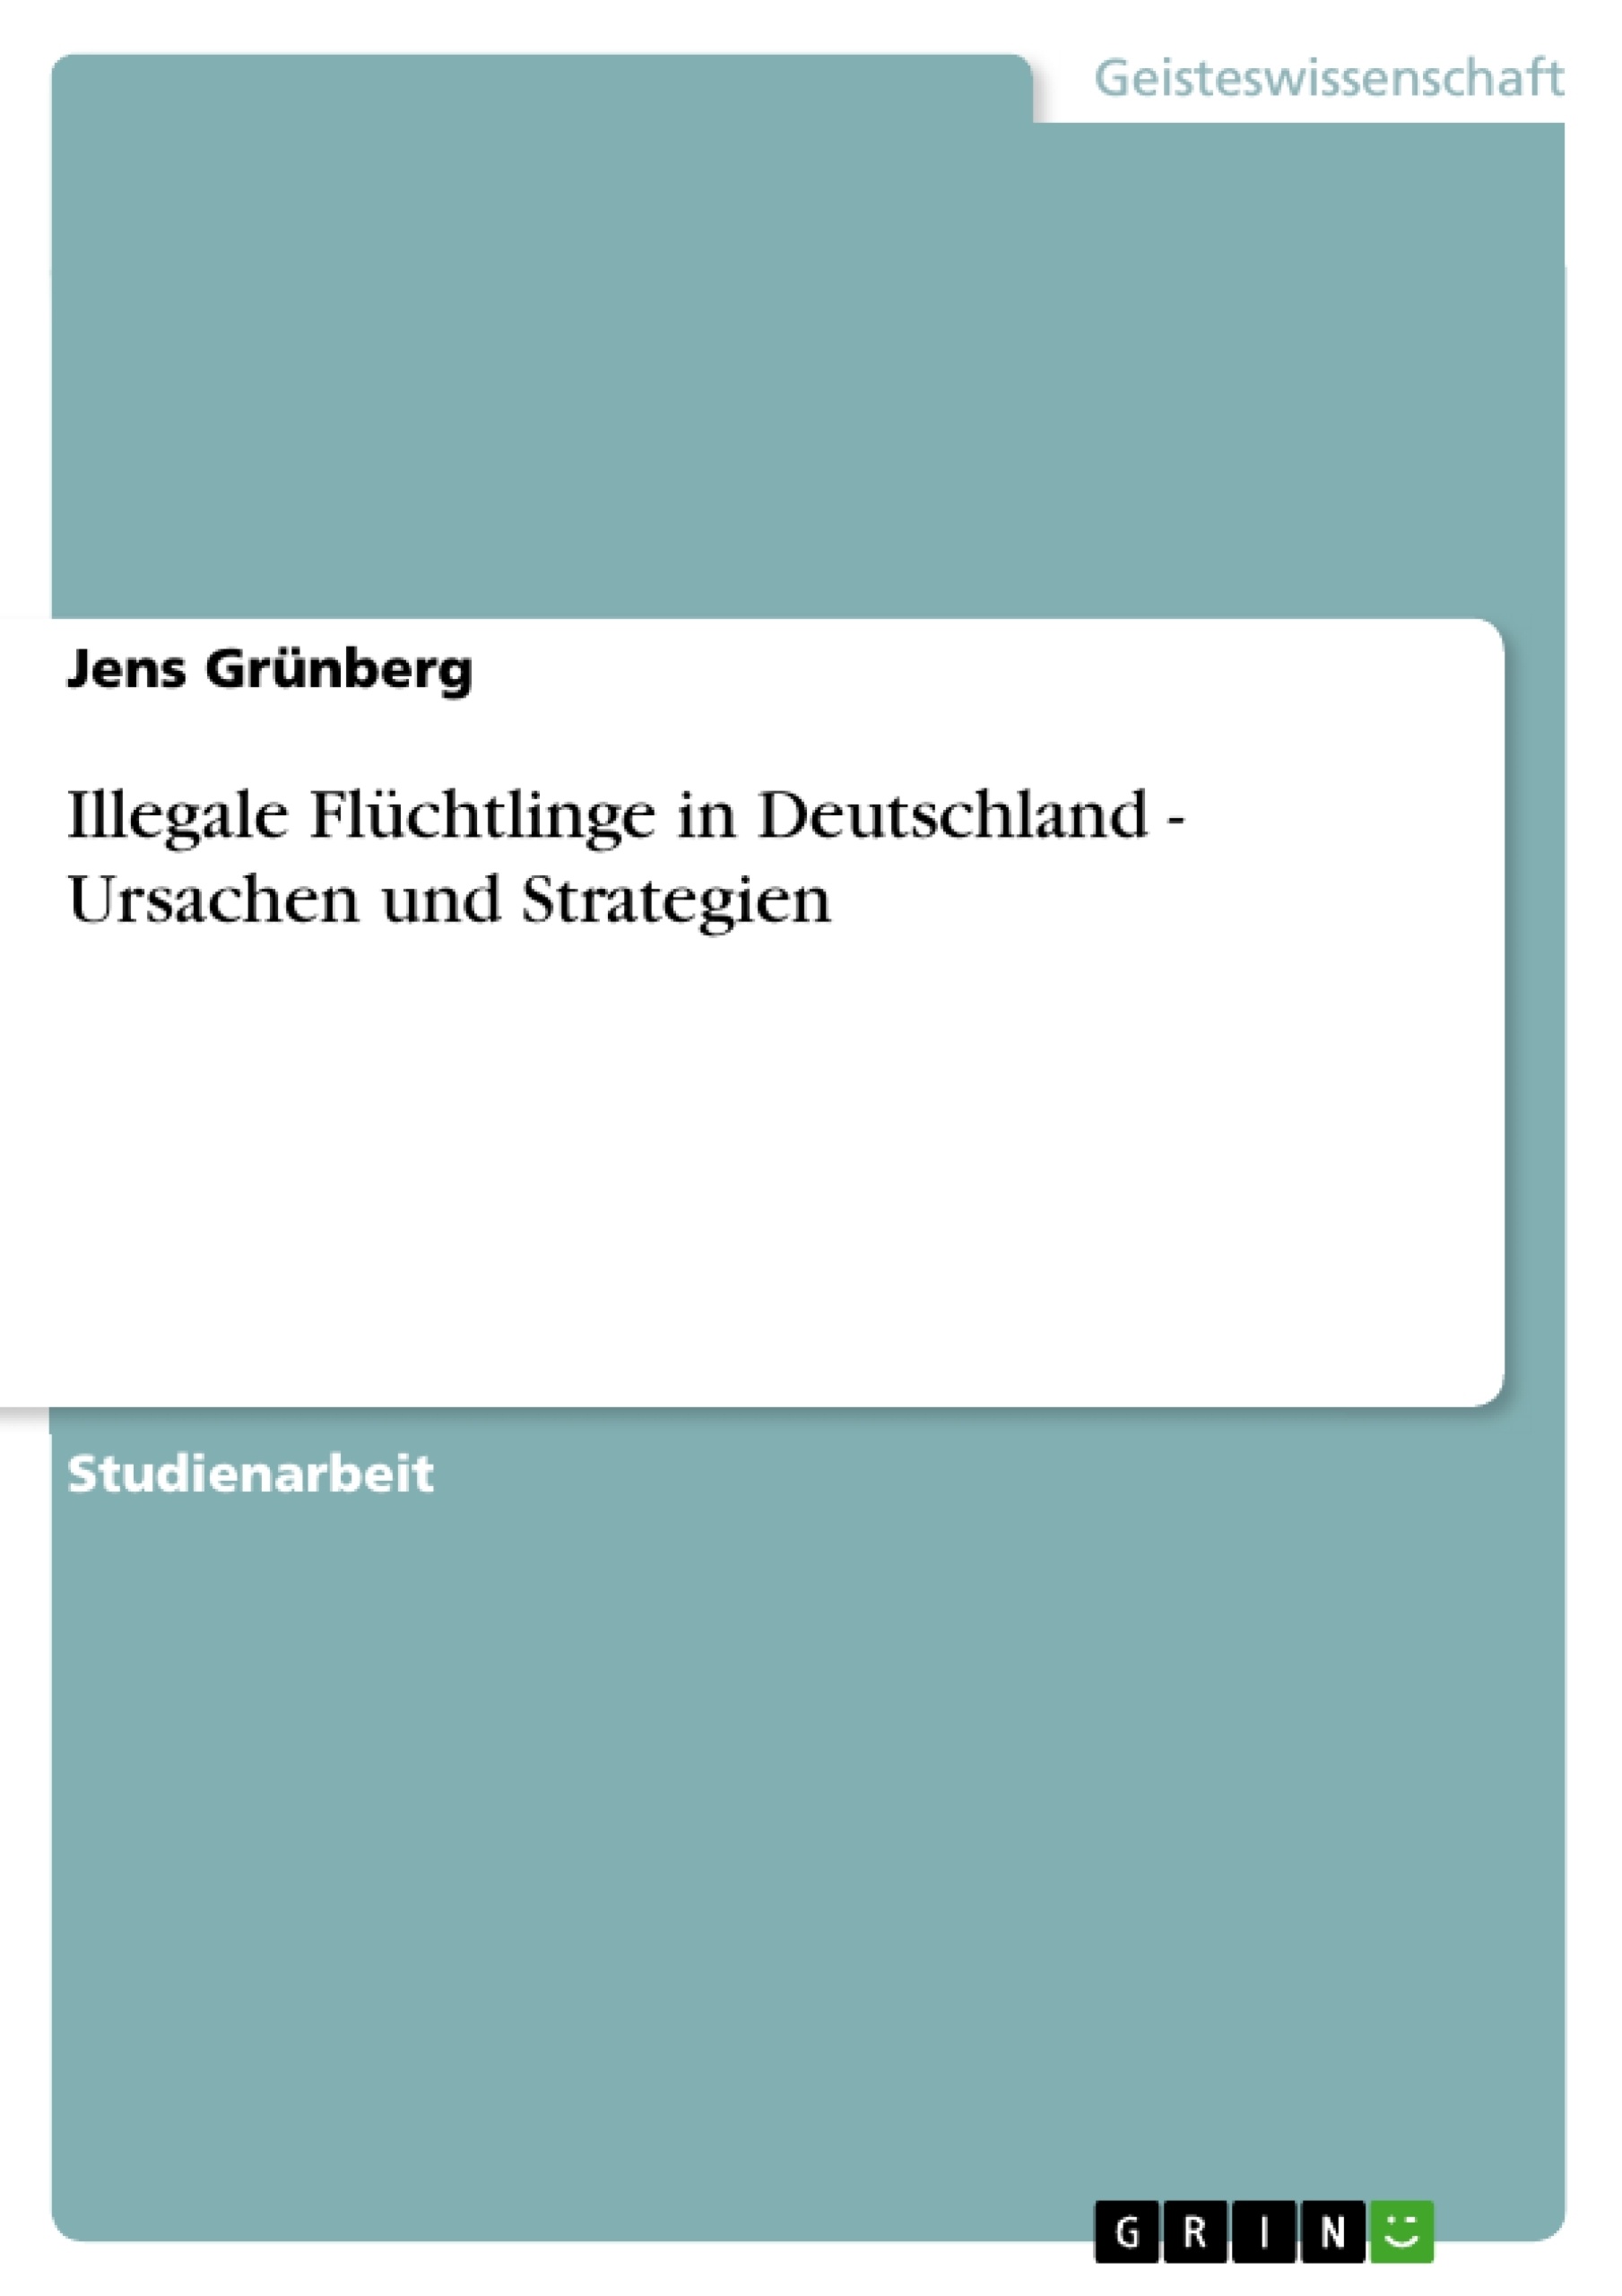 Titel: Illegale Flüchtlinge in Deutschland - Ursachen und Strategien